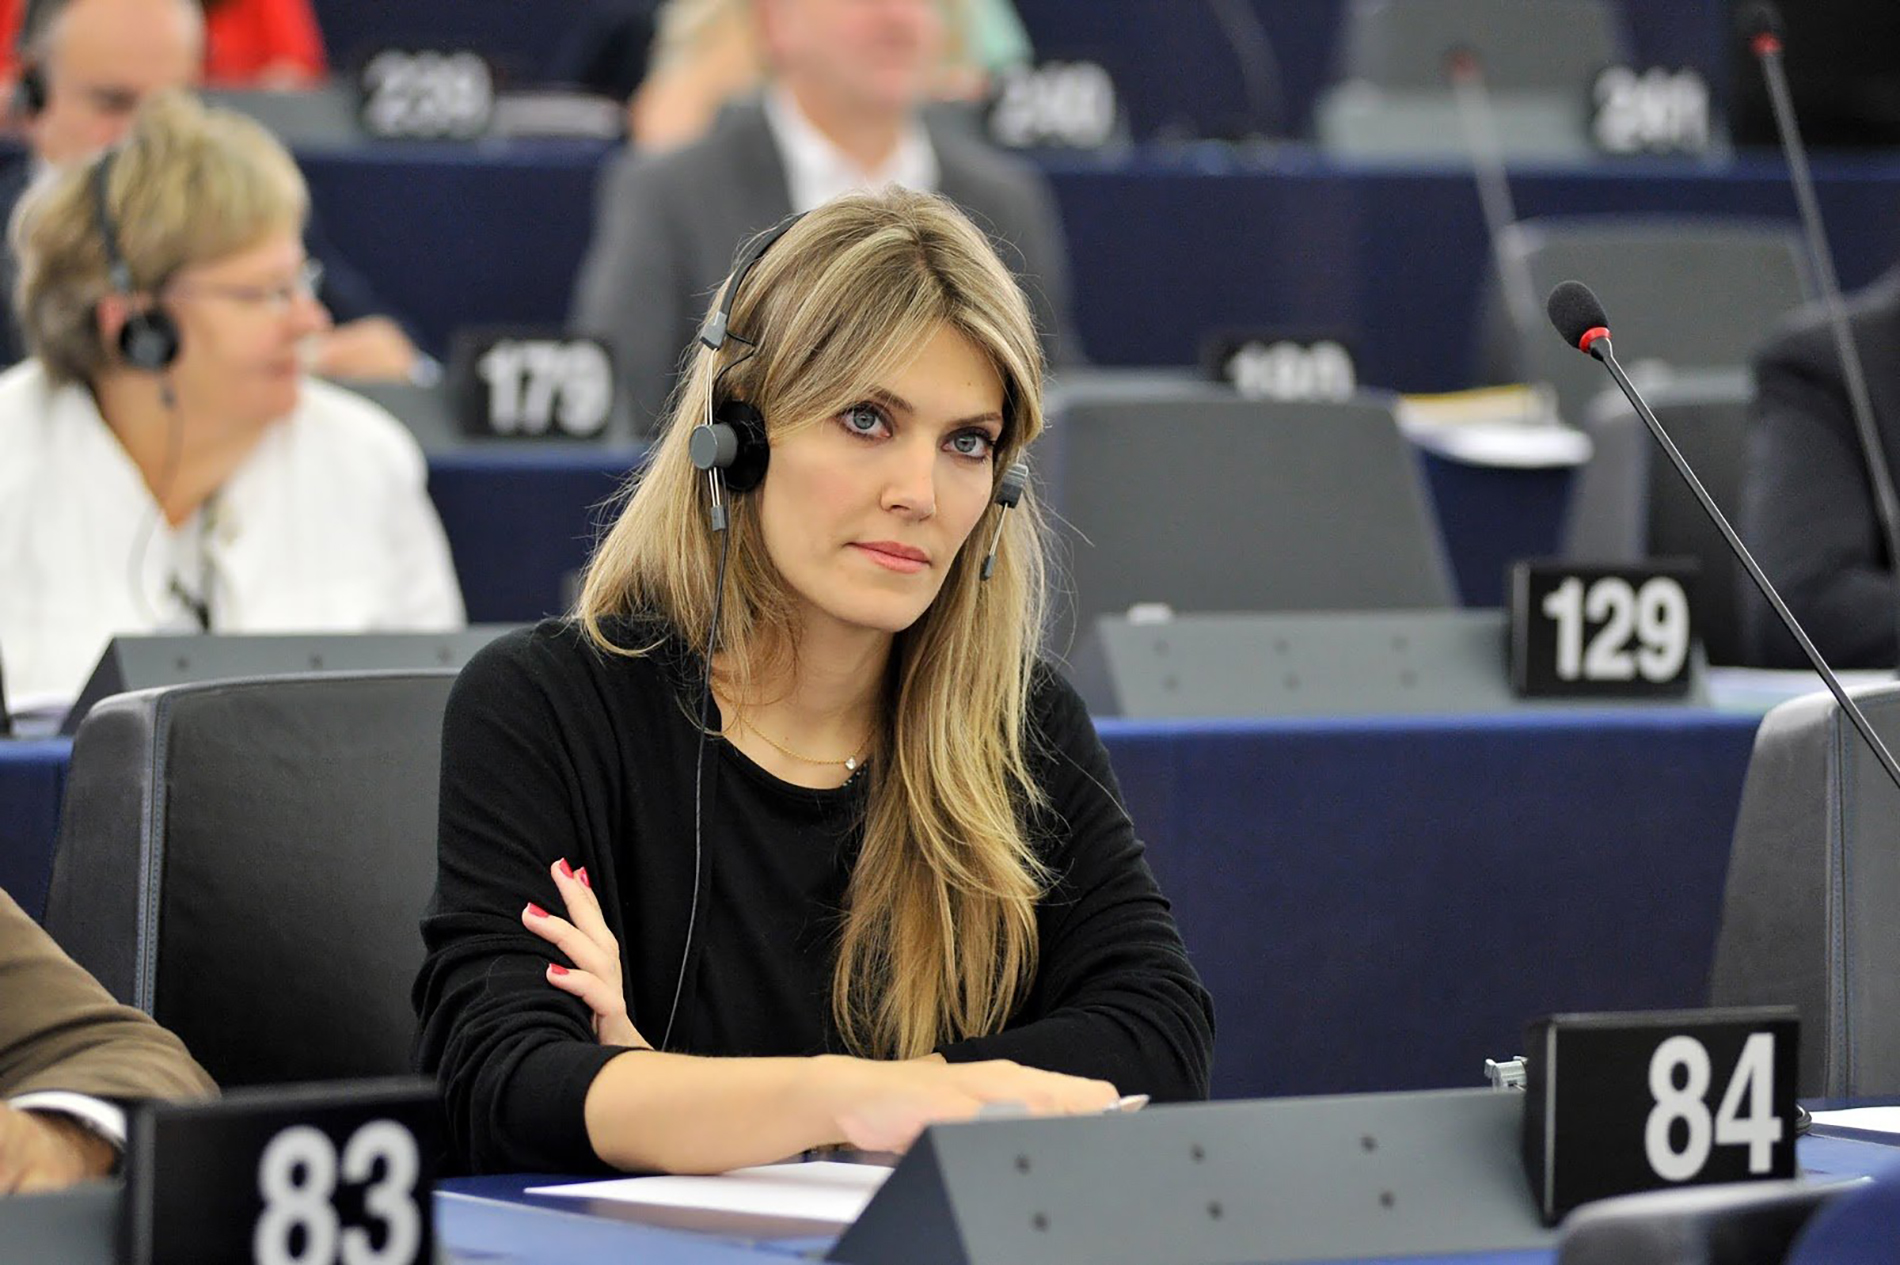 السلطات البلجيكية تستجوب نائبة يونانية في البرلمان الأوروبي  بشأن فضيحة تتعلق بقطر